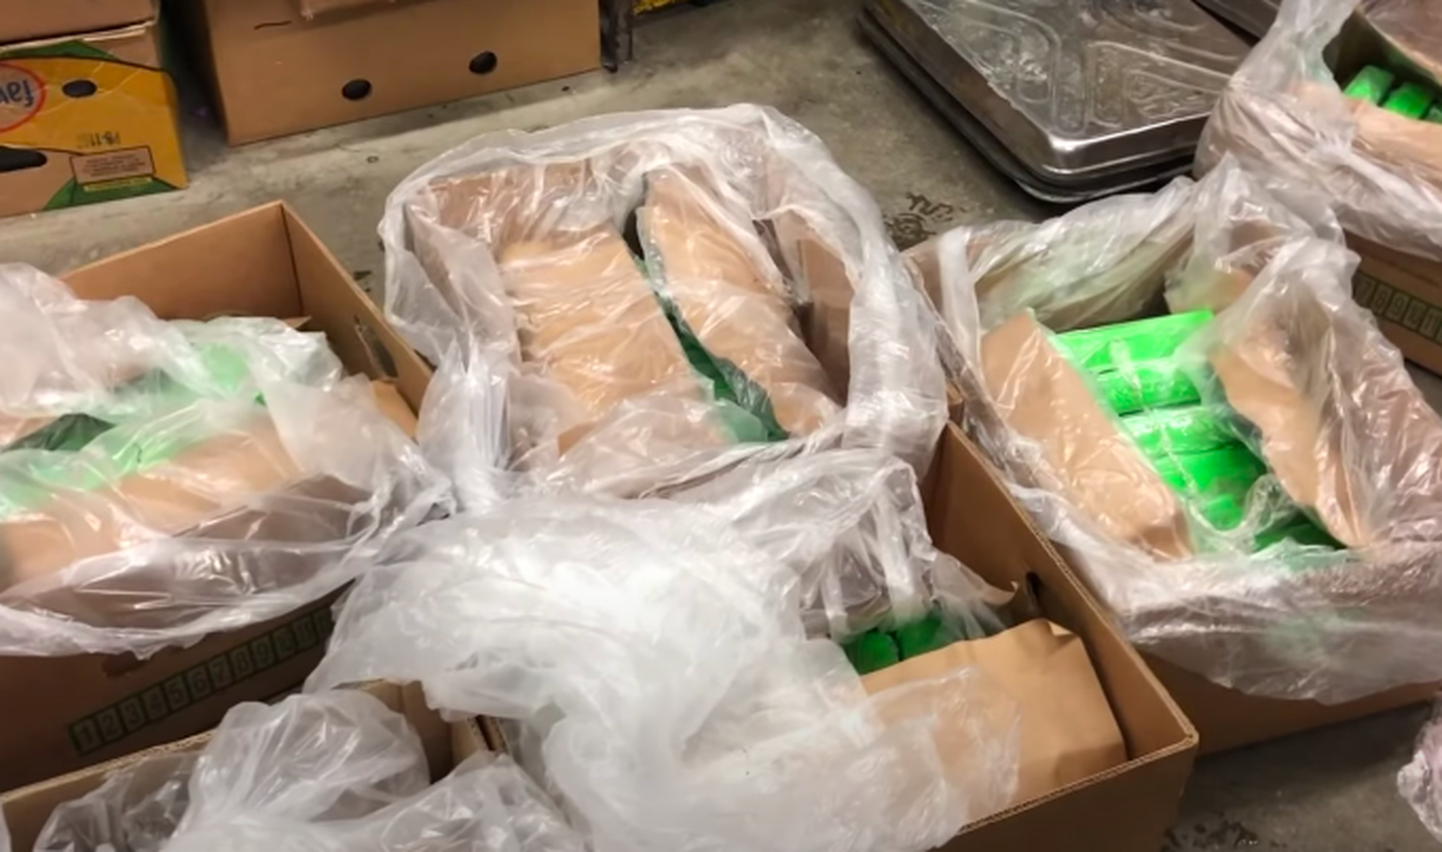 Banānu kastes, kurās atrasti 168 kilogrami narkotisko vielu.